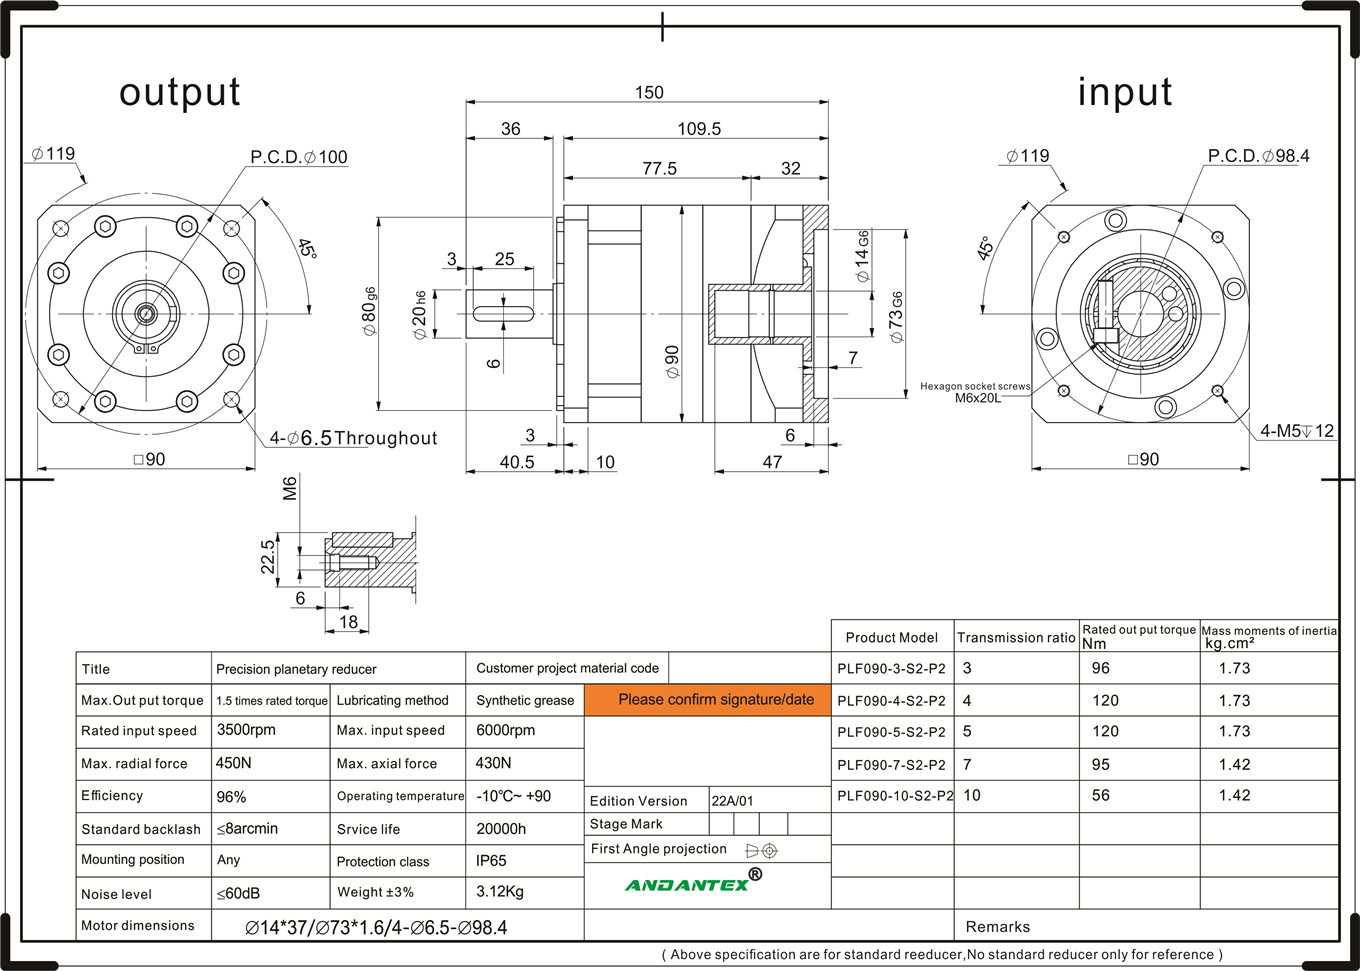 Andantex plf090-10-s2-p2 मानक श्रृंखला ग्रहीय गियरबॉक्स उपकरण अनुप्रयोगों में औद्योगिक मशीनरी-01